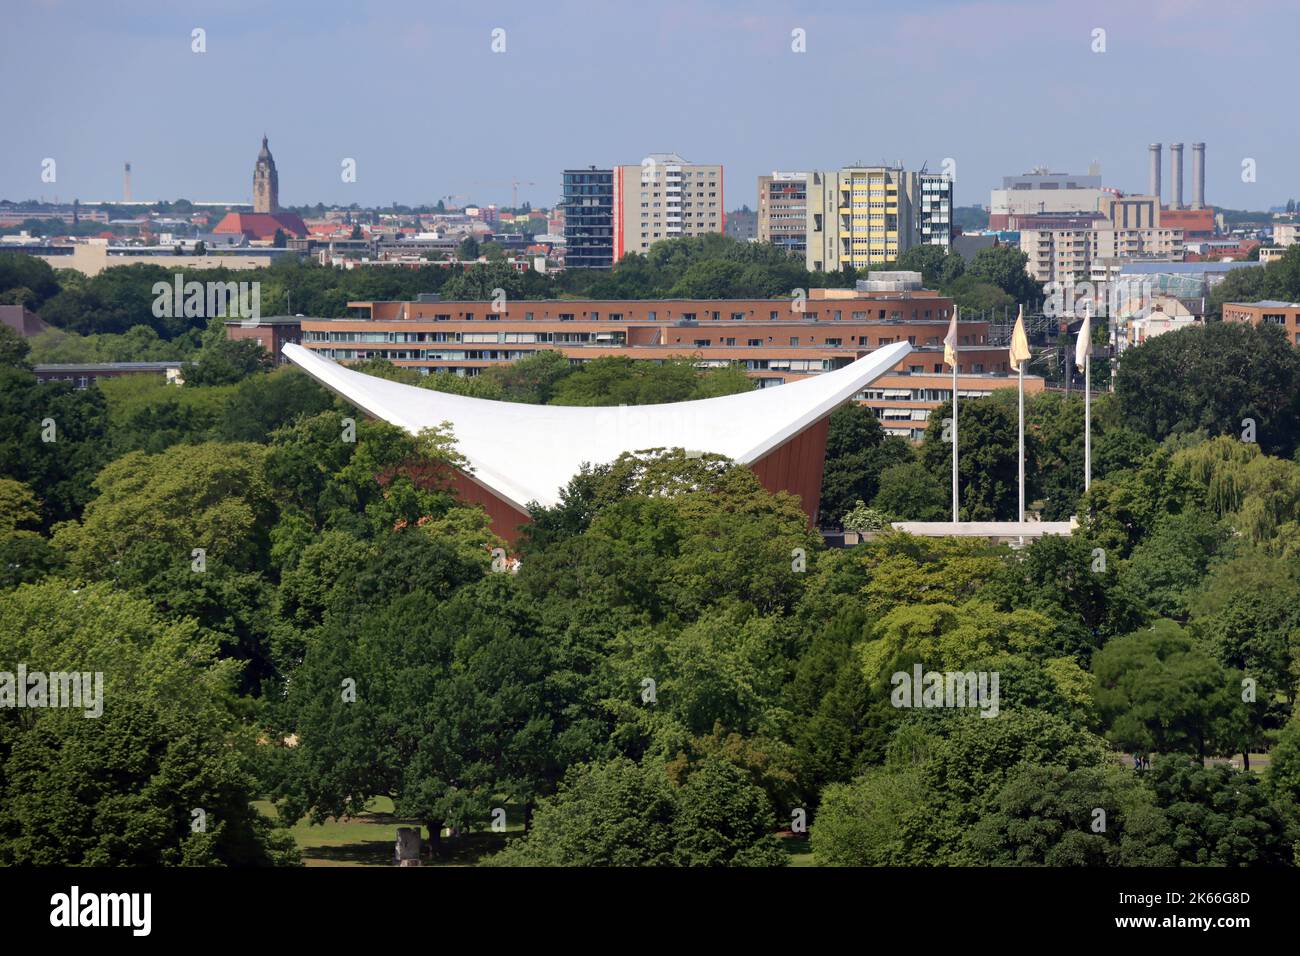 Vue depuis la plate-forme de visualisation du Reichtag en direction de la Maison des cultures du monde, Allemagne, Berlin Banque D'Images